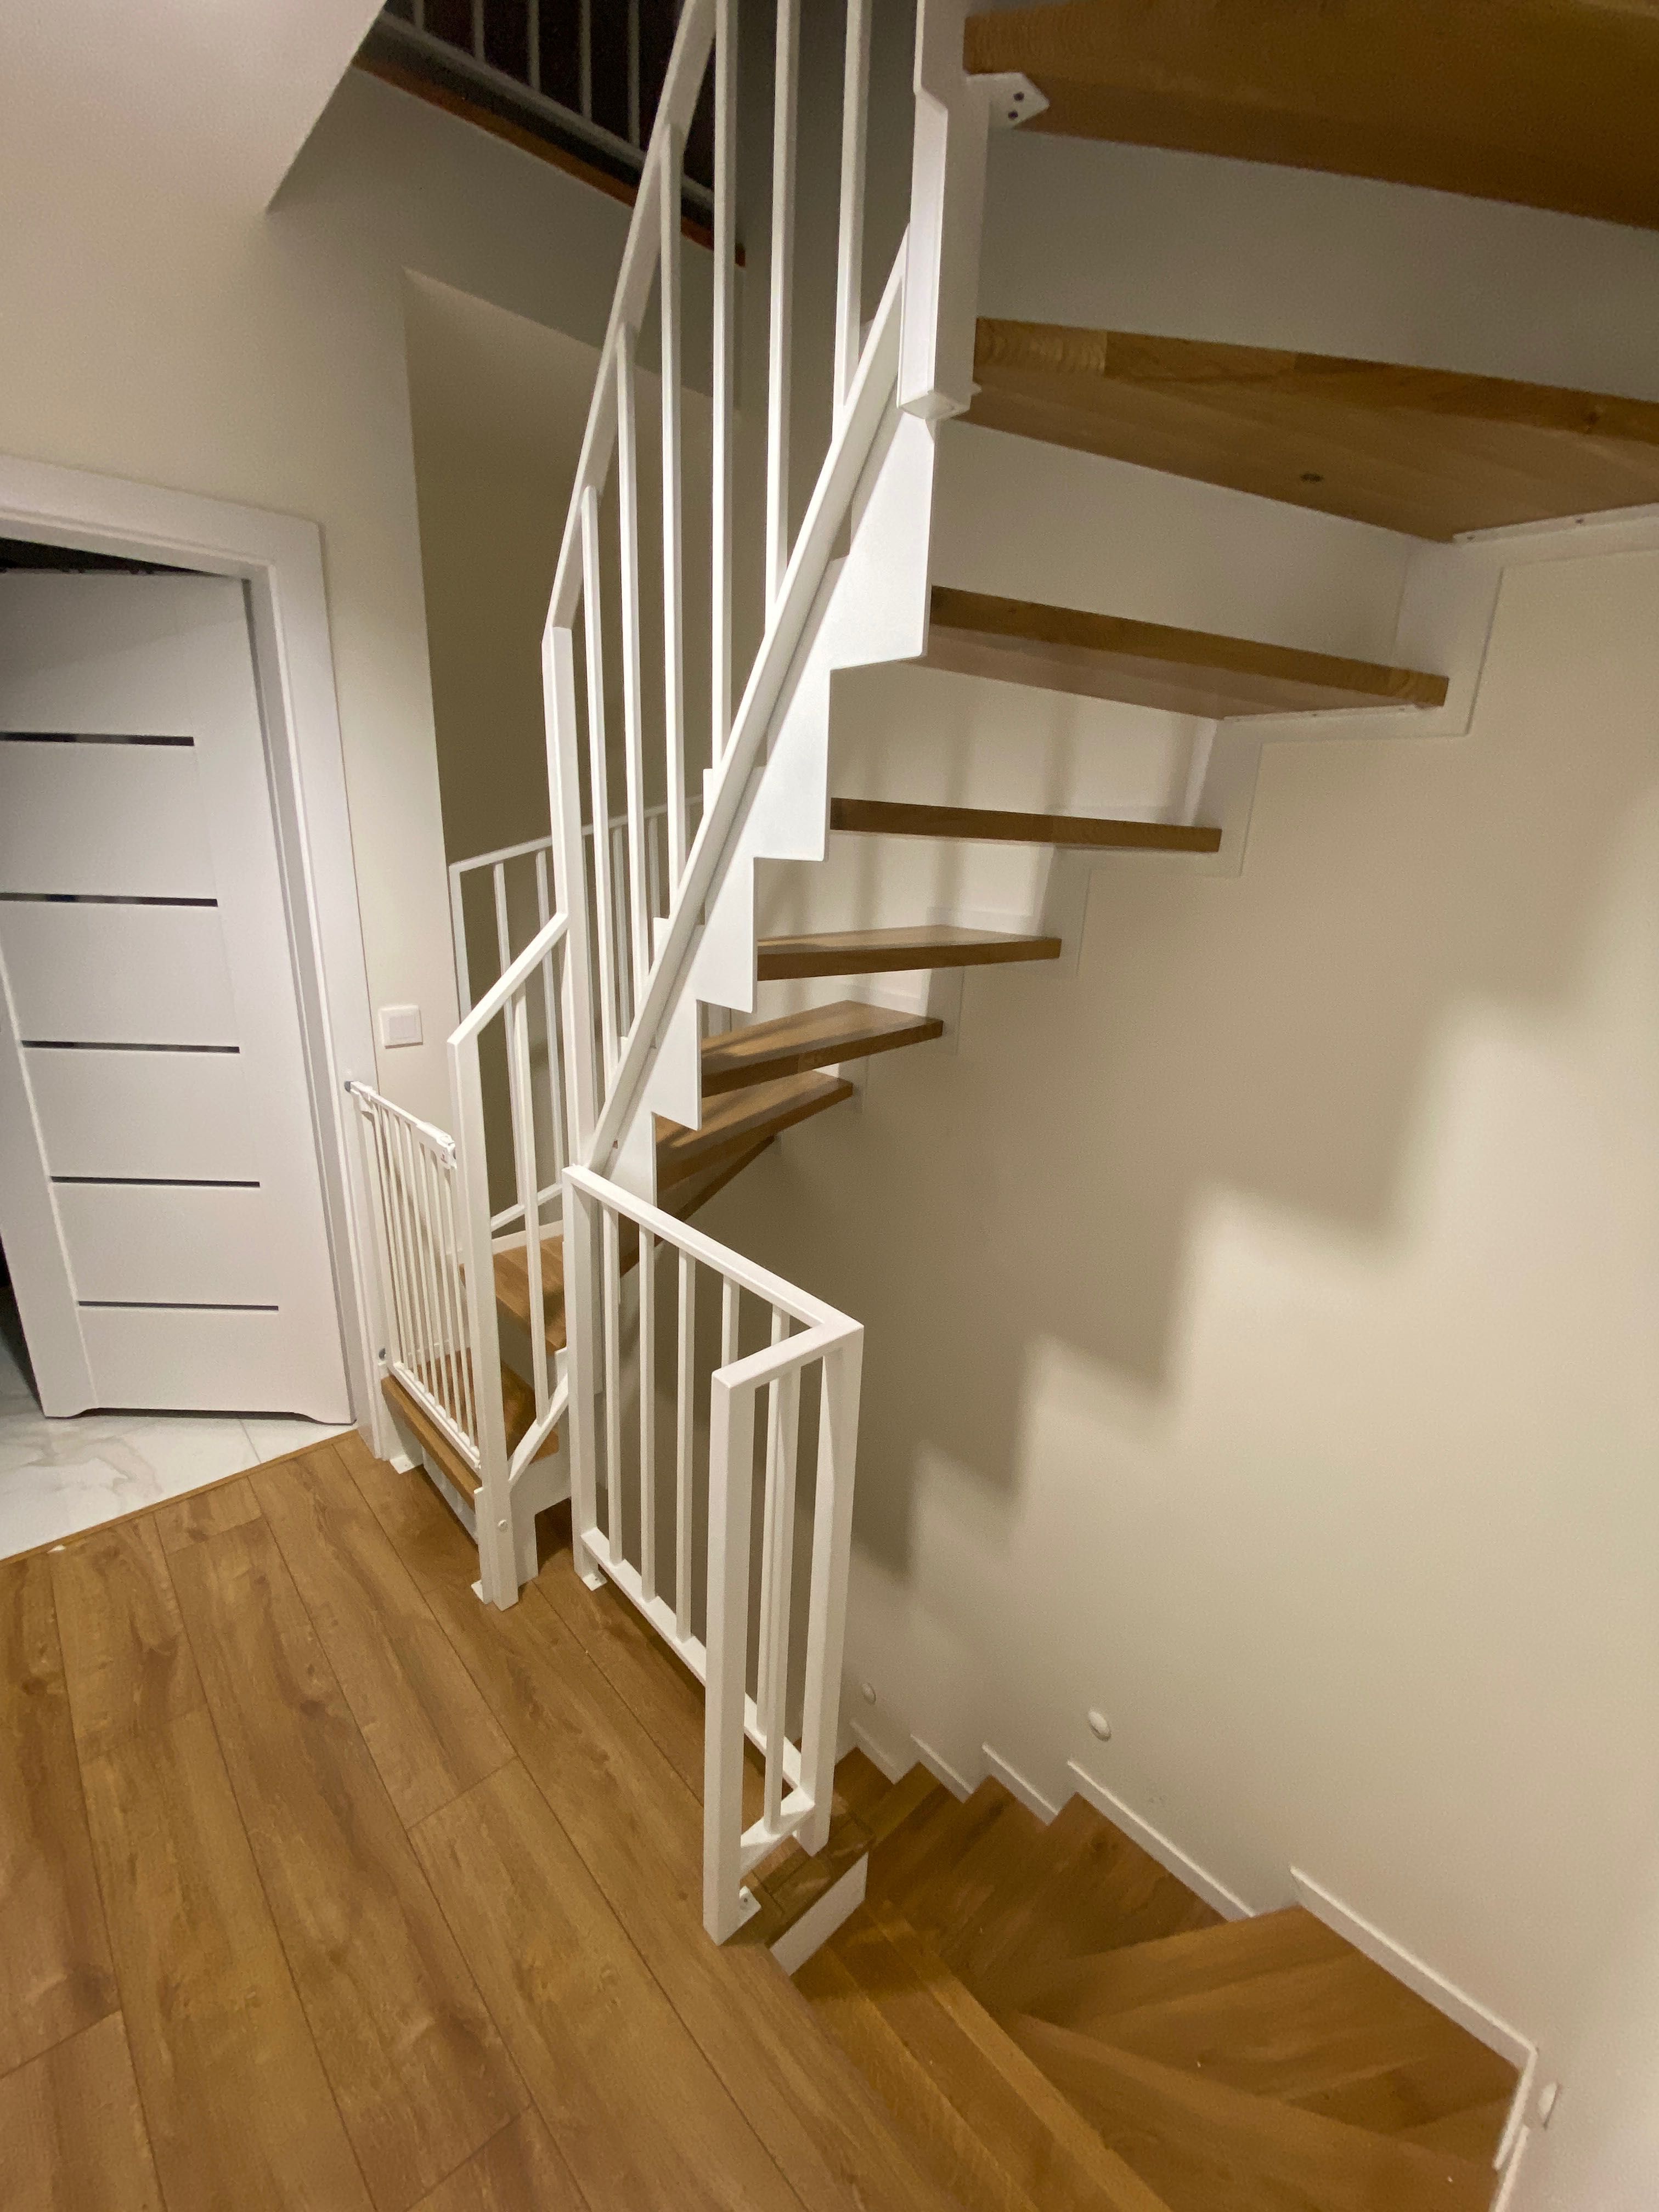 Stalowe schody wewnętrzne stopnie dębowe styl industrialny loft